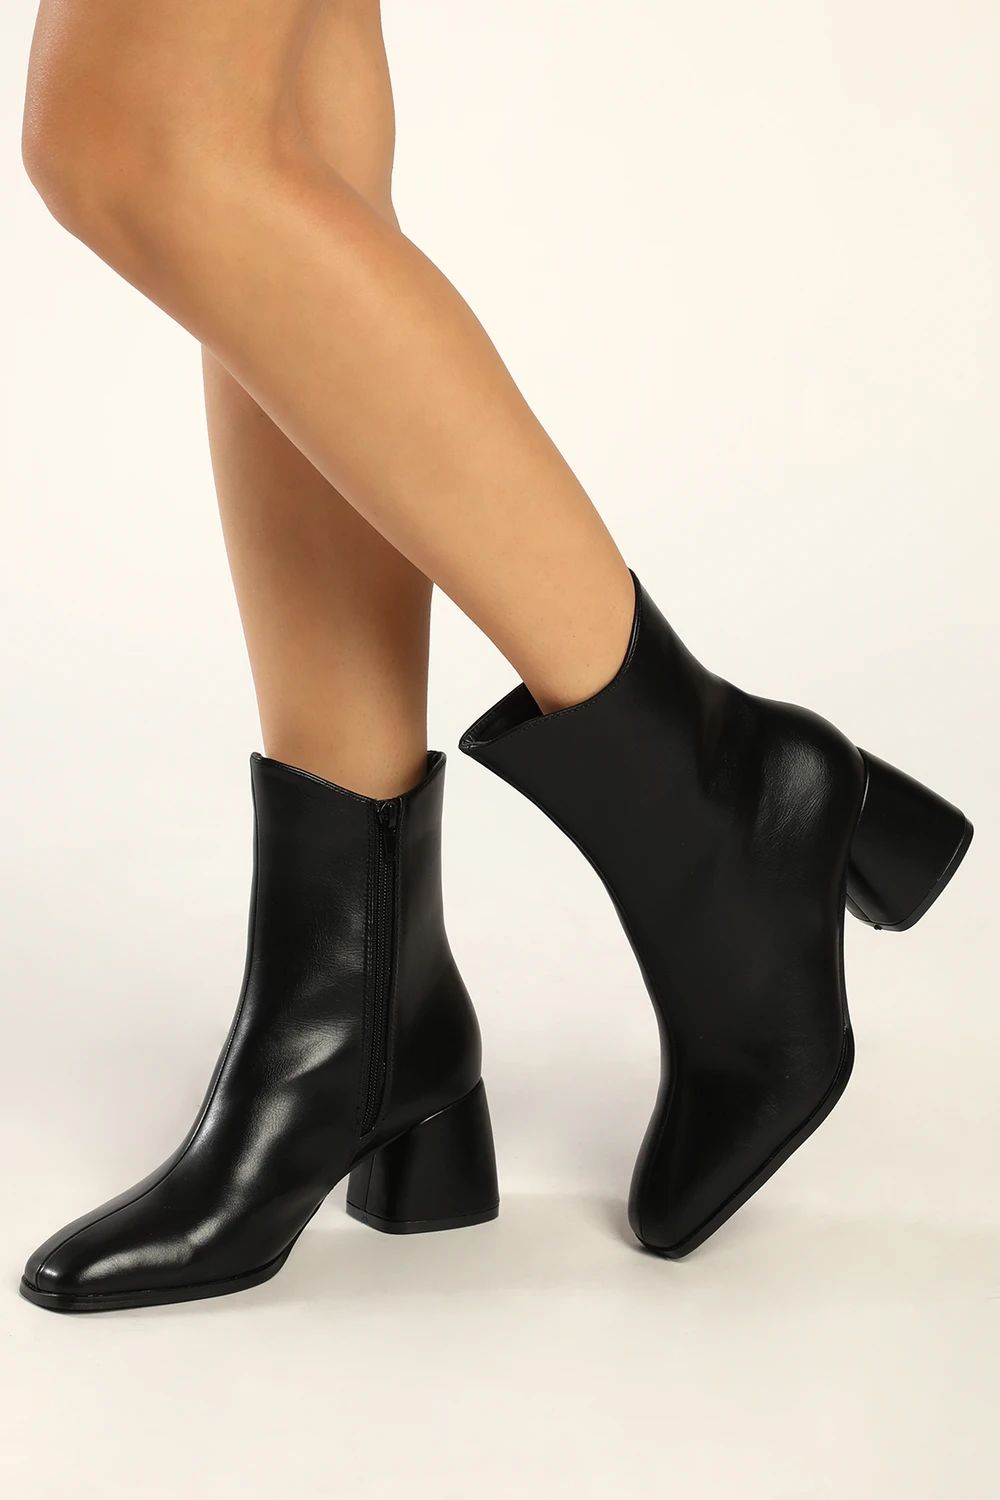 Windal Black Square Toe Mid-Calf Boots | Lulus (US)